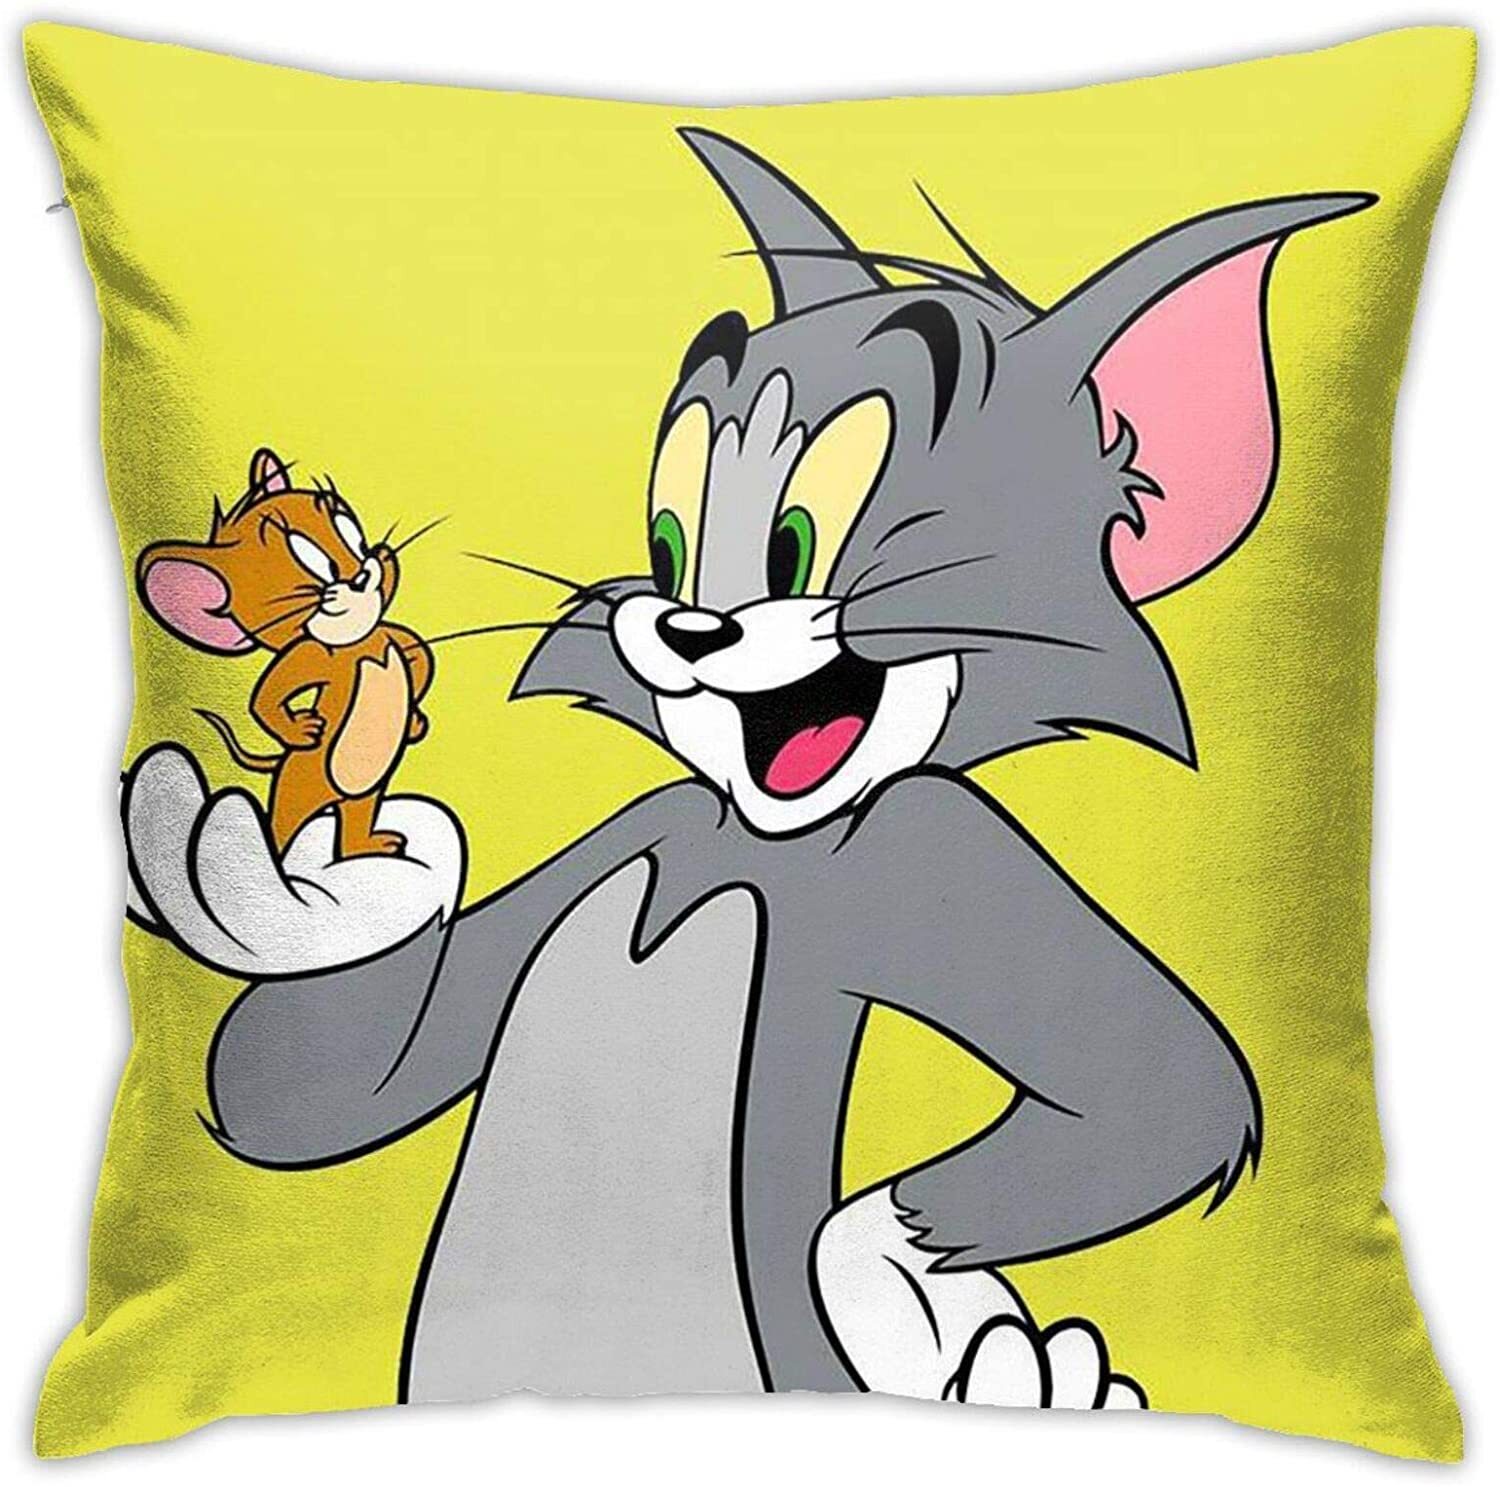 Включи бразильский том тома тома. Tom and Jerry. Том и Джерри Джерри. Джерри из том и Джерри. Мультяшные персонажи.